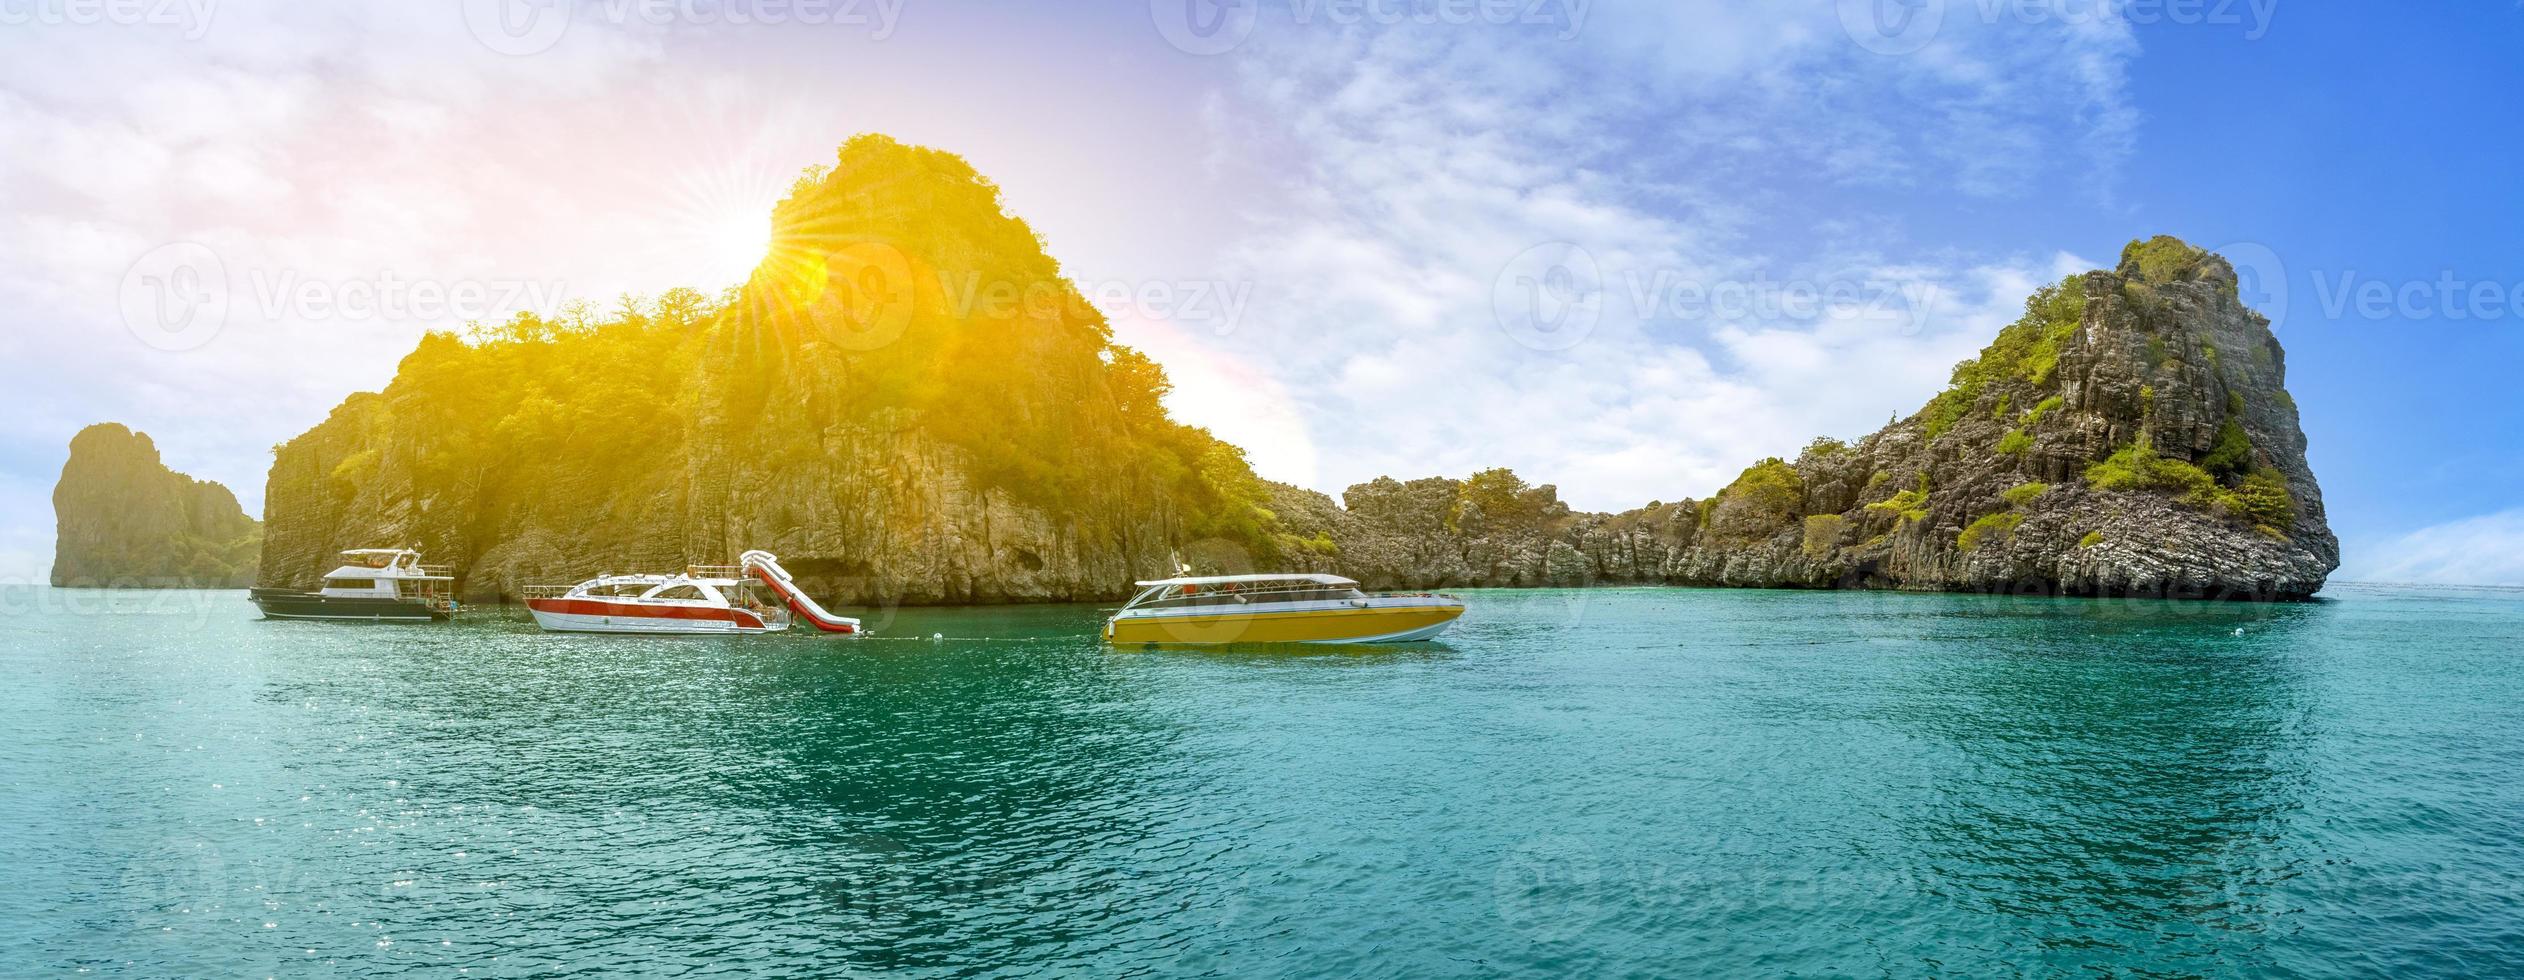 parque nacional ko lanta reina del mar en tailandia foto